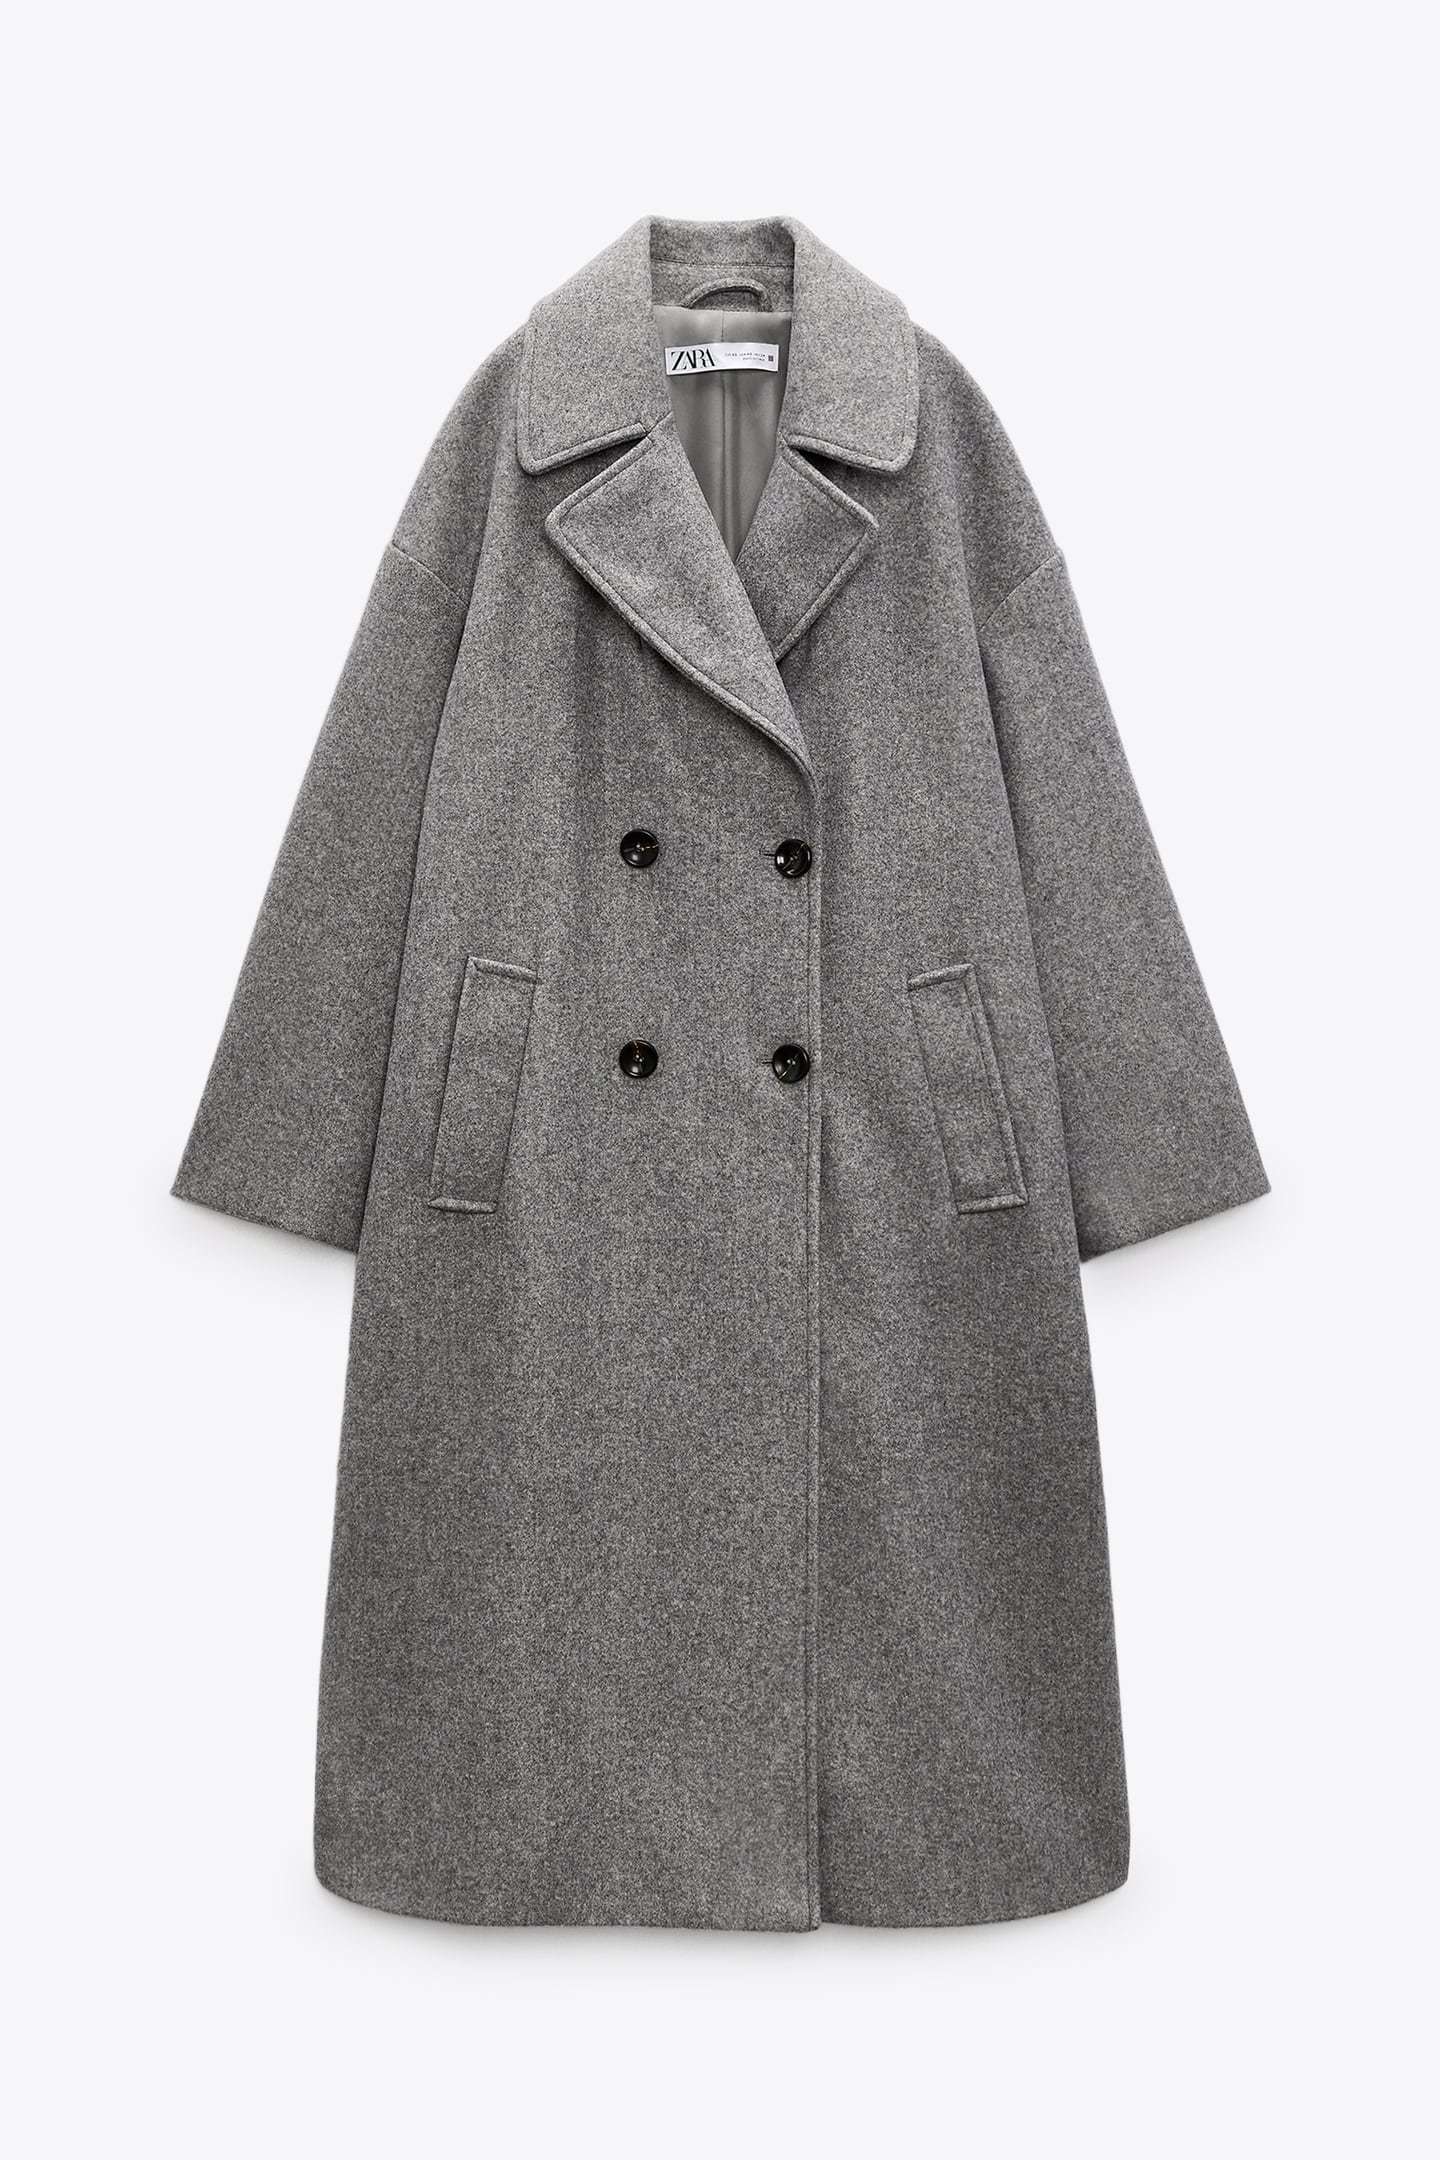 Abrigo gris de Zara.